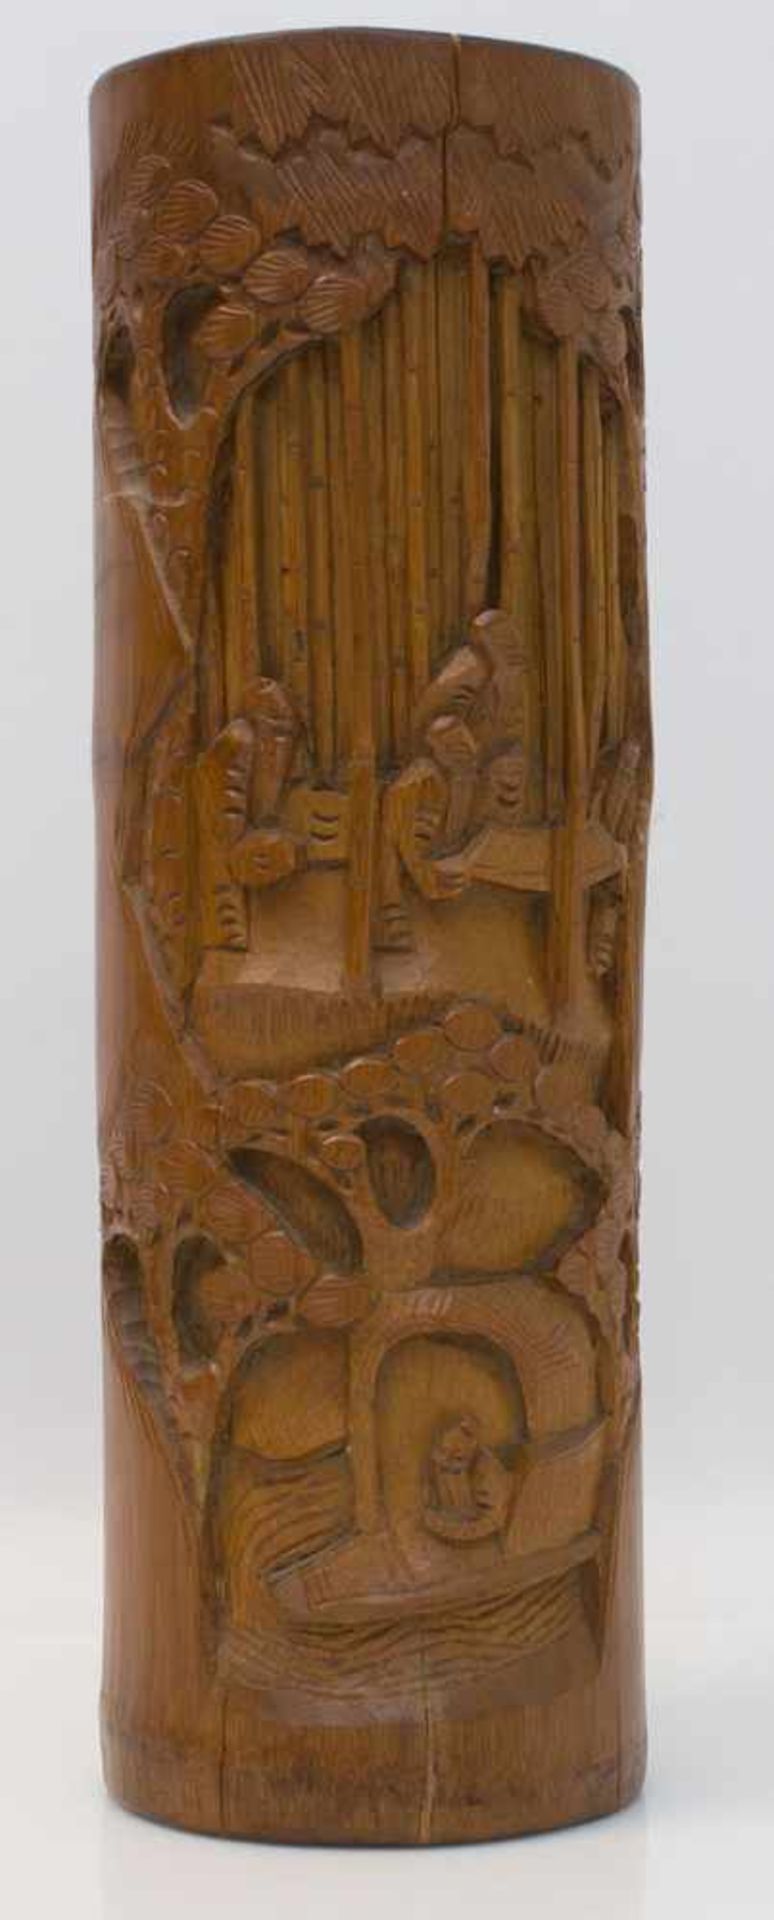 Pinselbehälterfür Kaligrafiepinsel, China, 20. Jh., Bambus, im Relief geschnitzt, Höhe 36 cm,